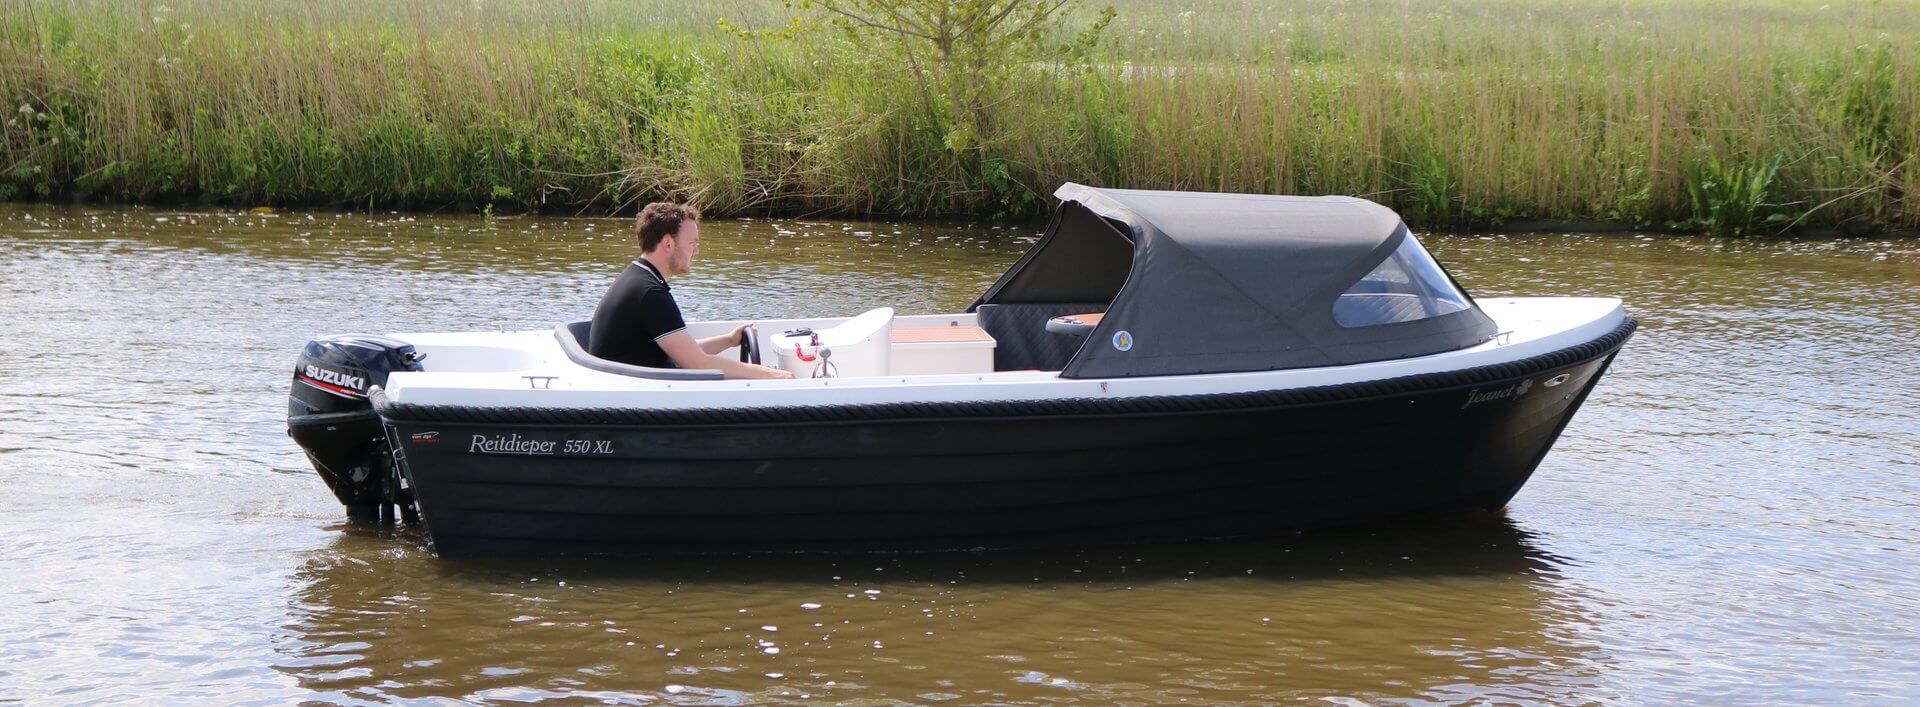 Roos Accumulatie hardop Nieuwe en gebruikte voorraad boten bij Van Dijk Watersport